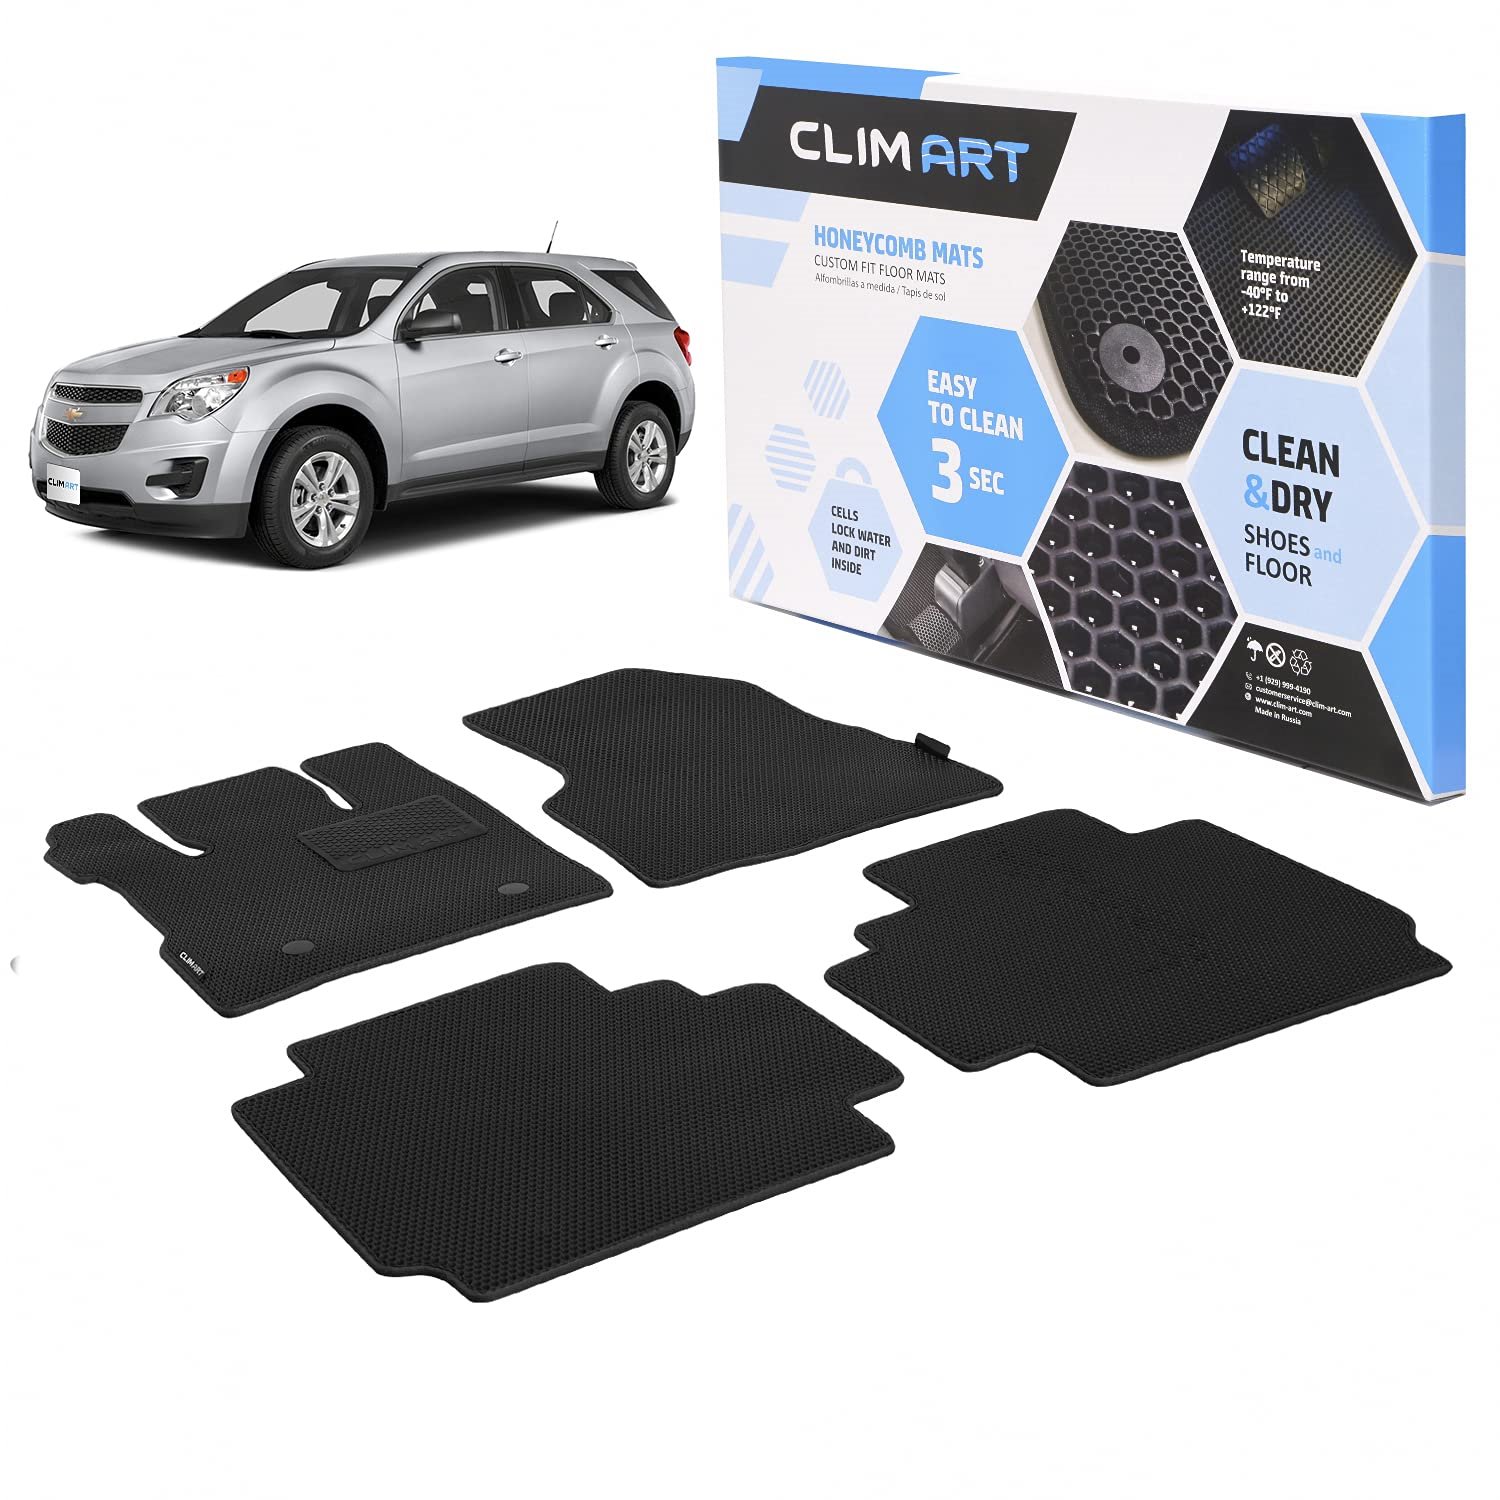 CLIM ART Honeycomb Custom Fit Floor Mats For 2011-2017 Chevrolet Equinox/GMC Terrain